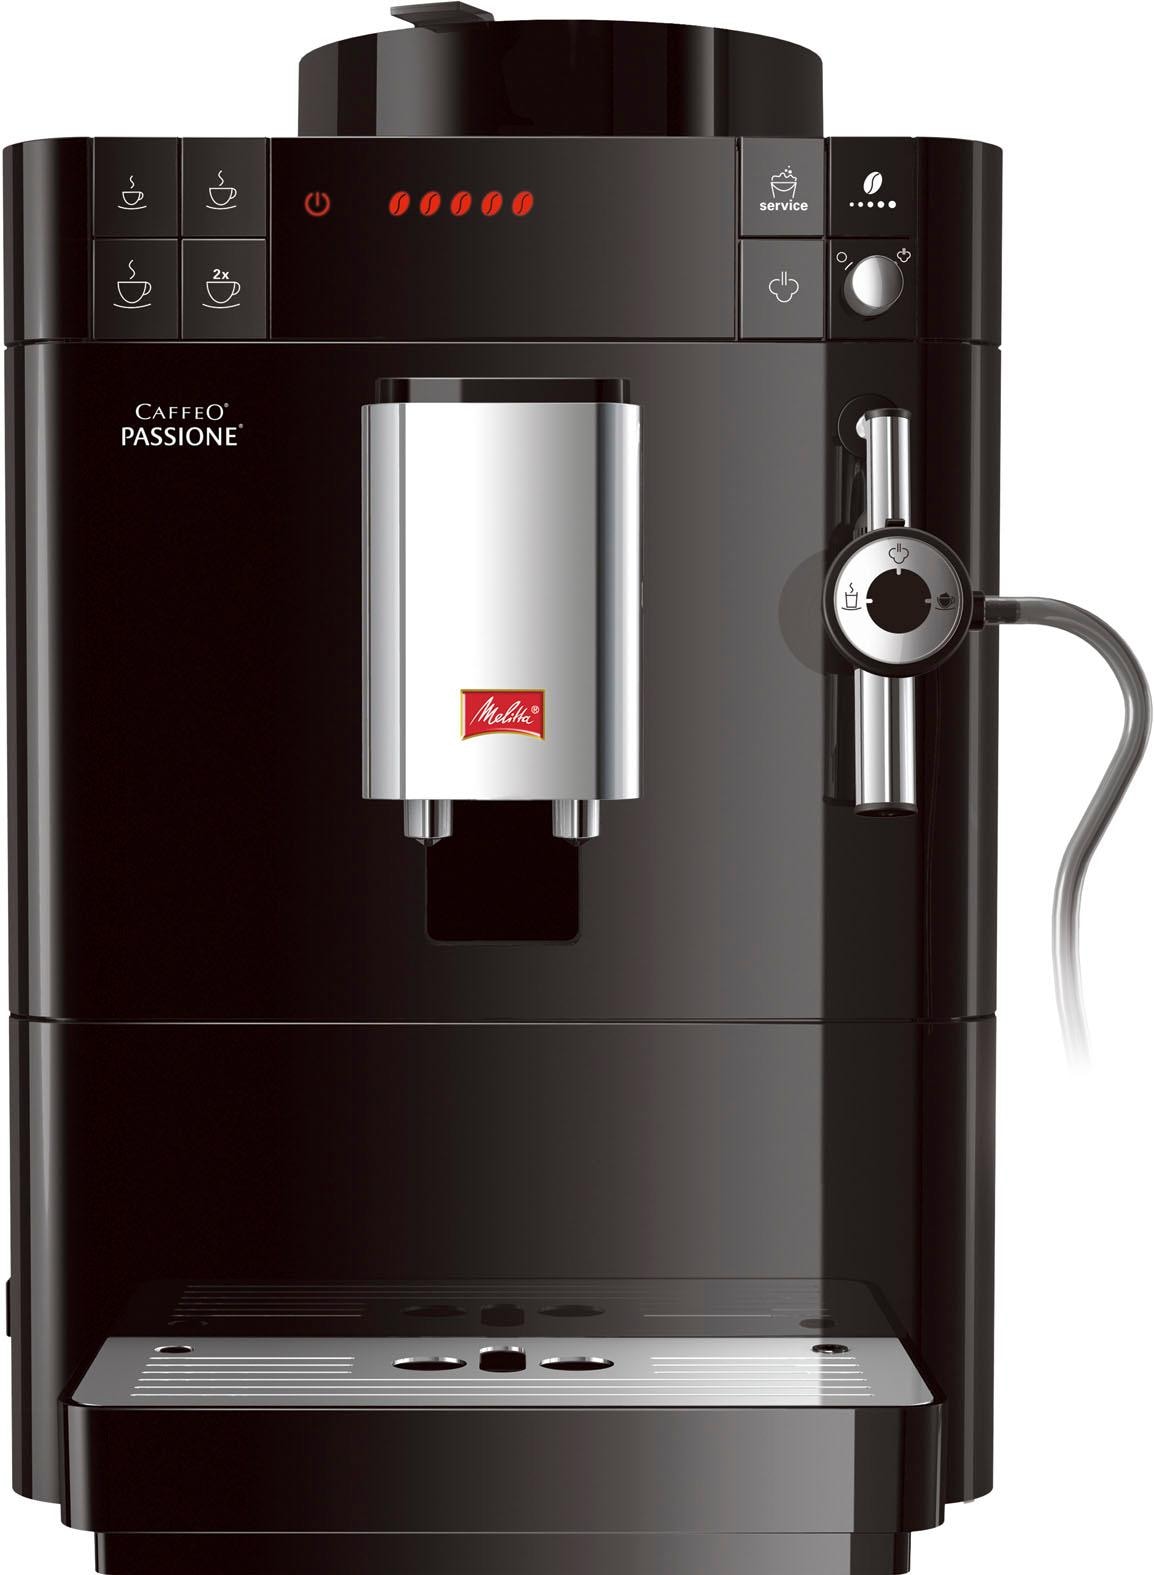 Tassengenau Jahren Entkalkung & F53/0-102 Garantie schwarz«, »Passione® Kaffeevollautomat Melitta 3 frisch Reinigung mit Service-Taste XXL für gemahlen,